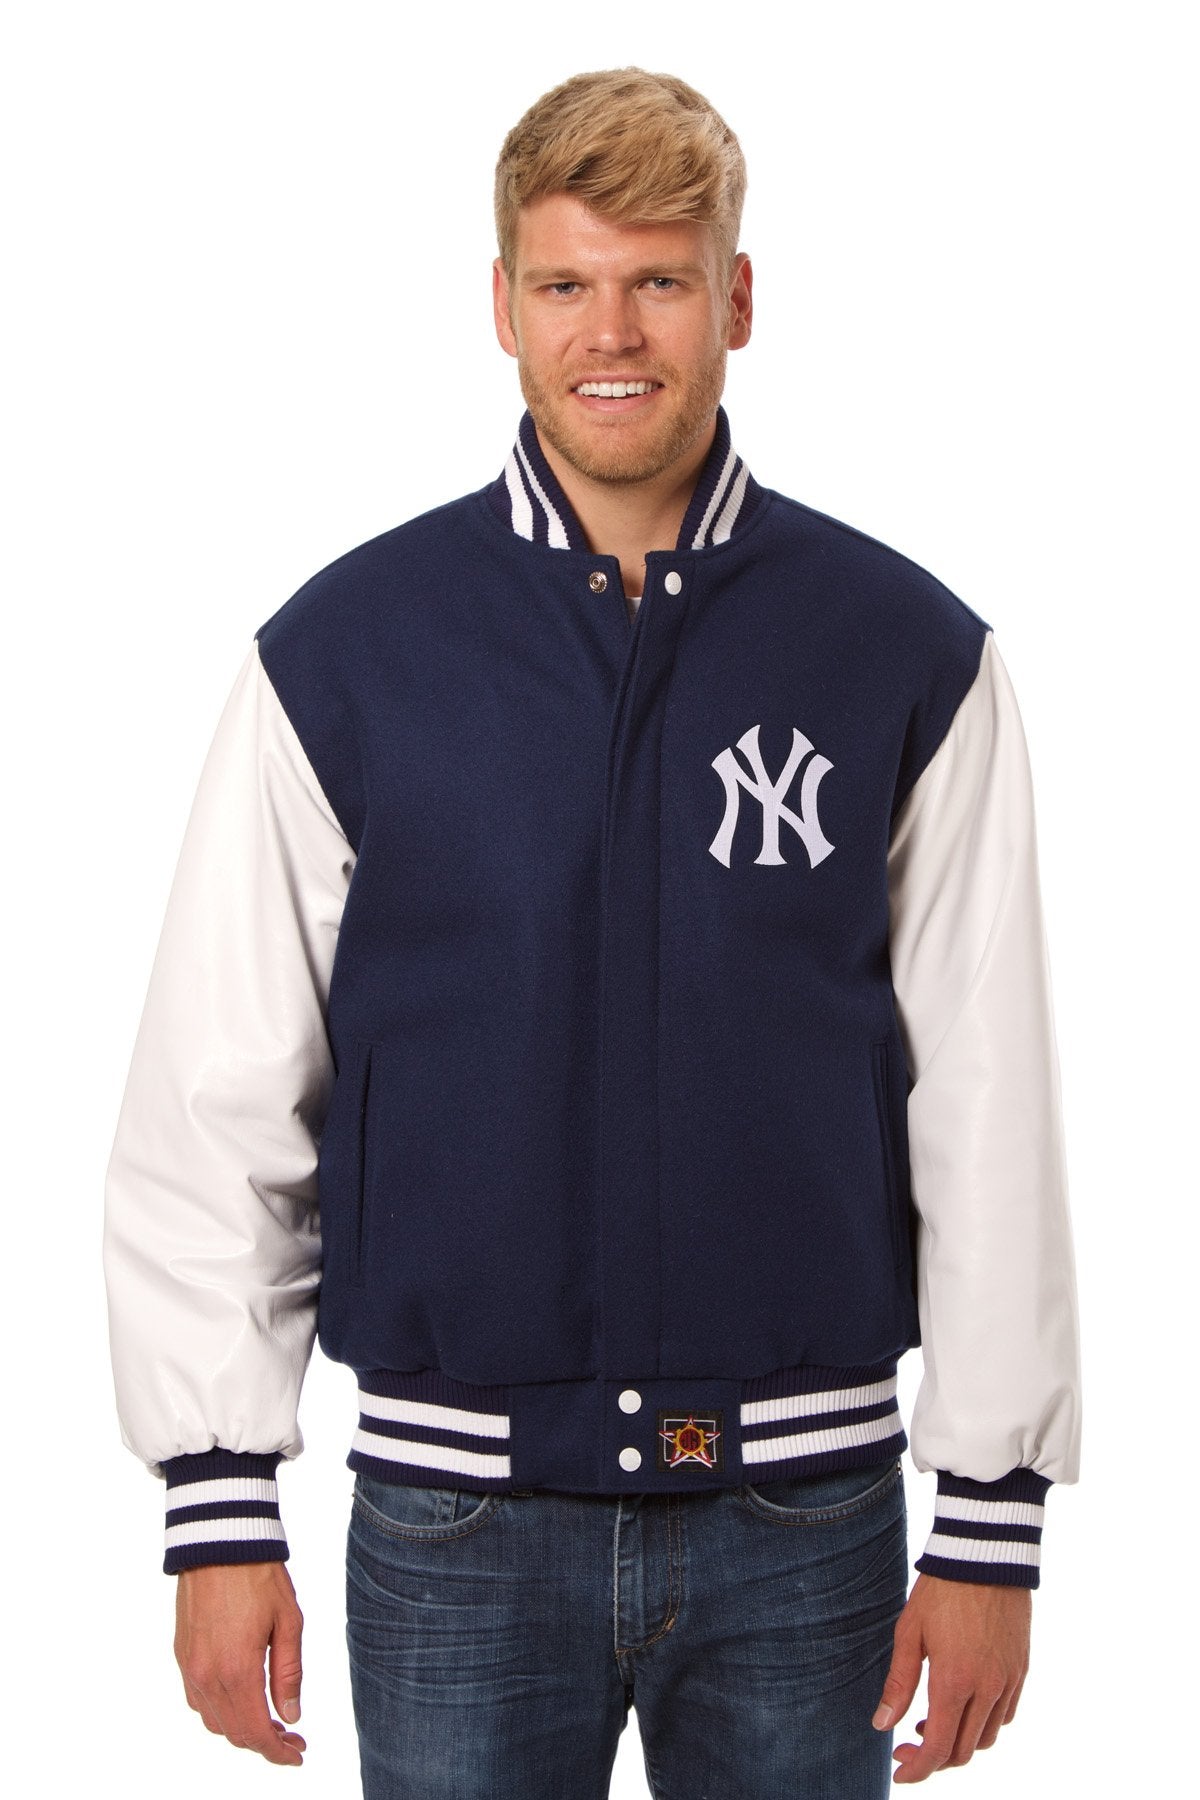 Varsity NY Yankees 1947 Navy Blue Jacket